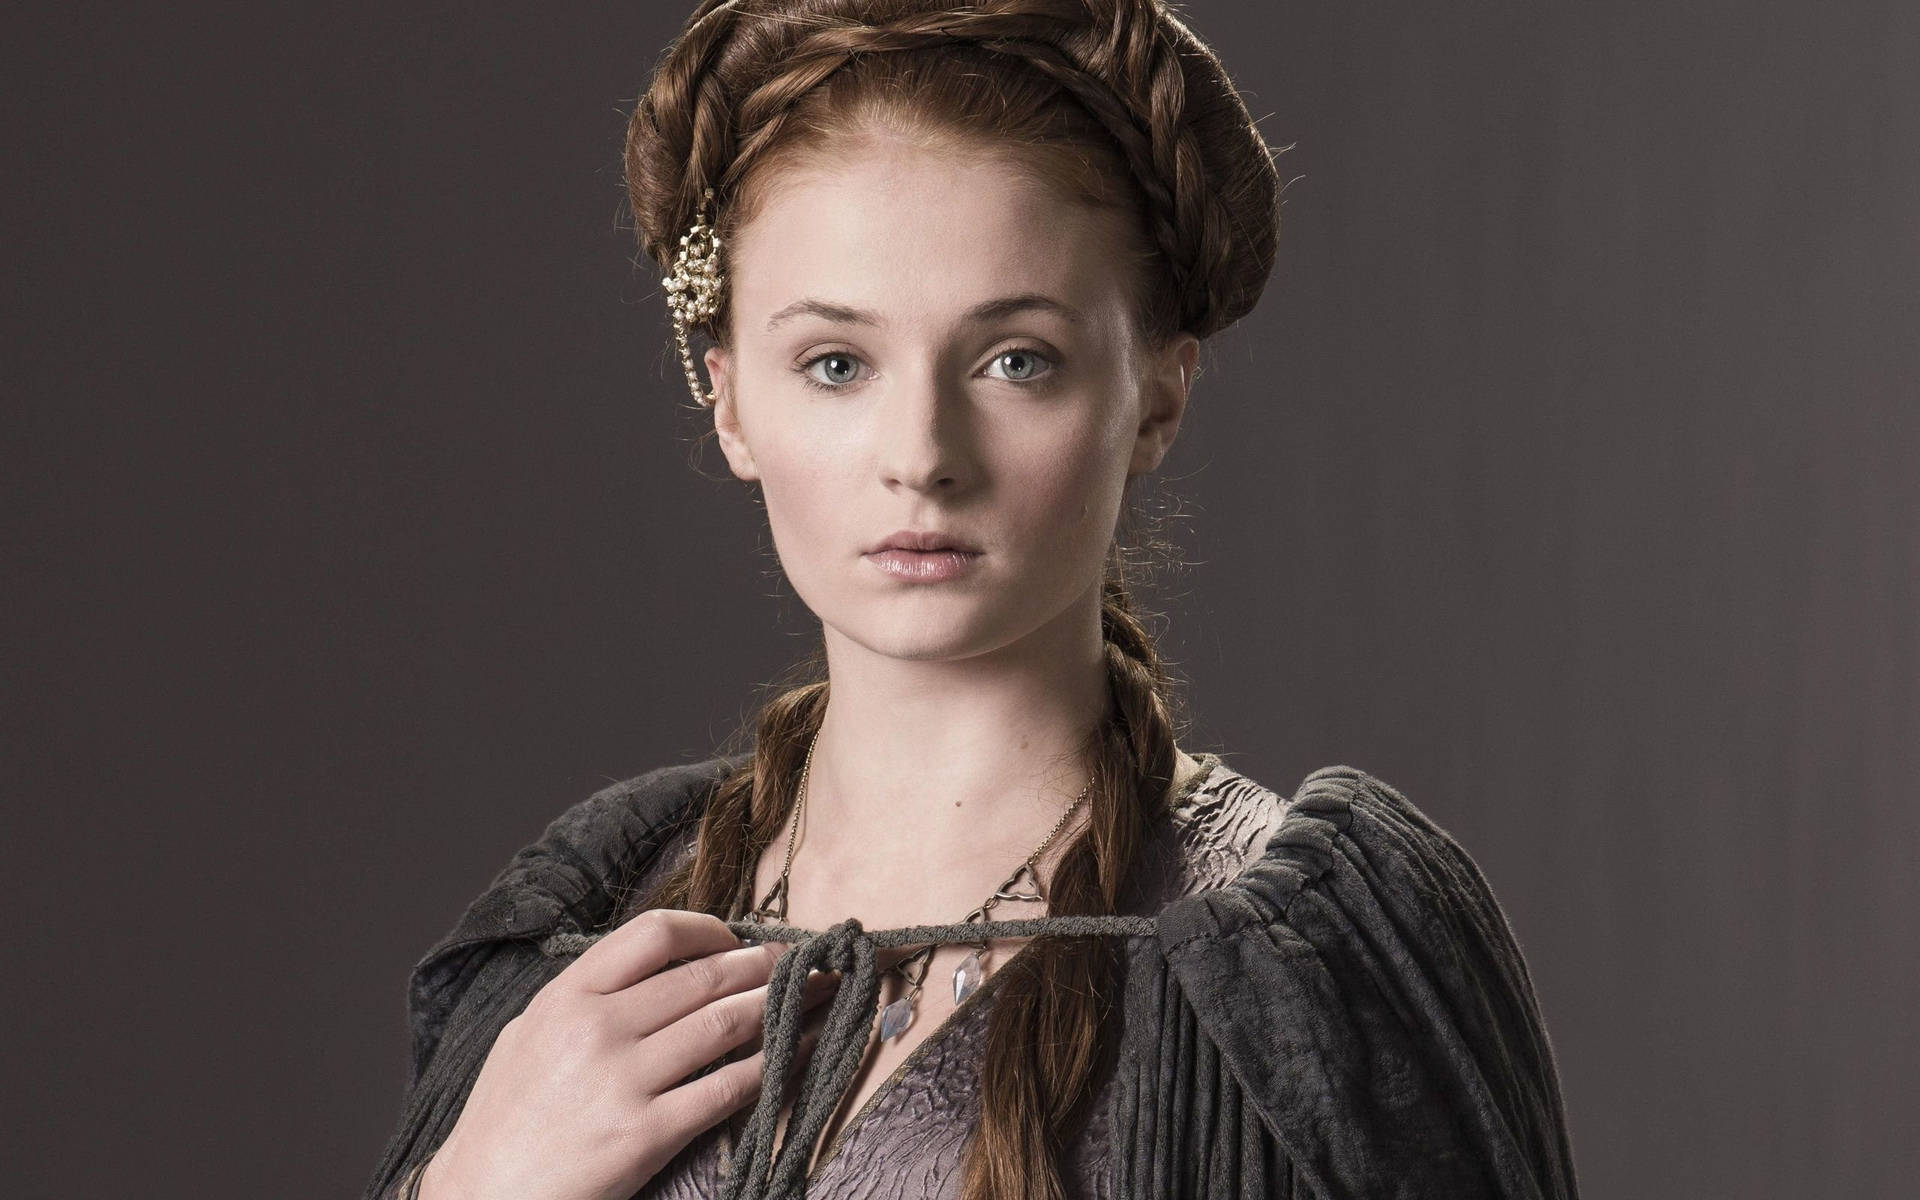 Sophie Turner Character Sansa Stark Background